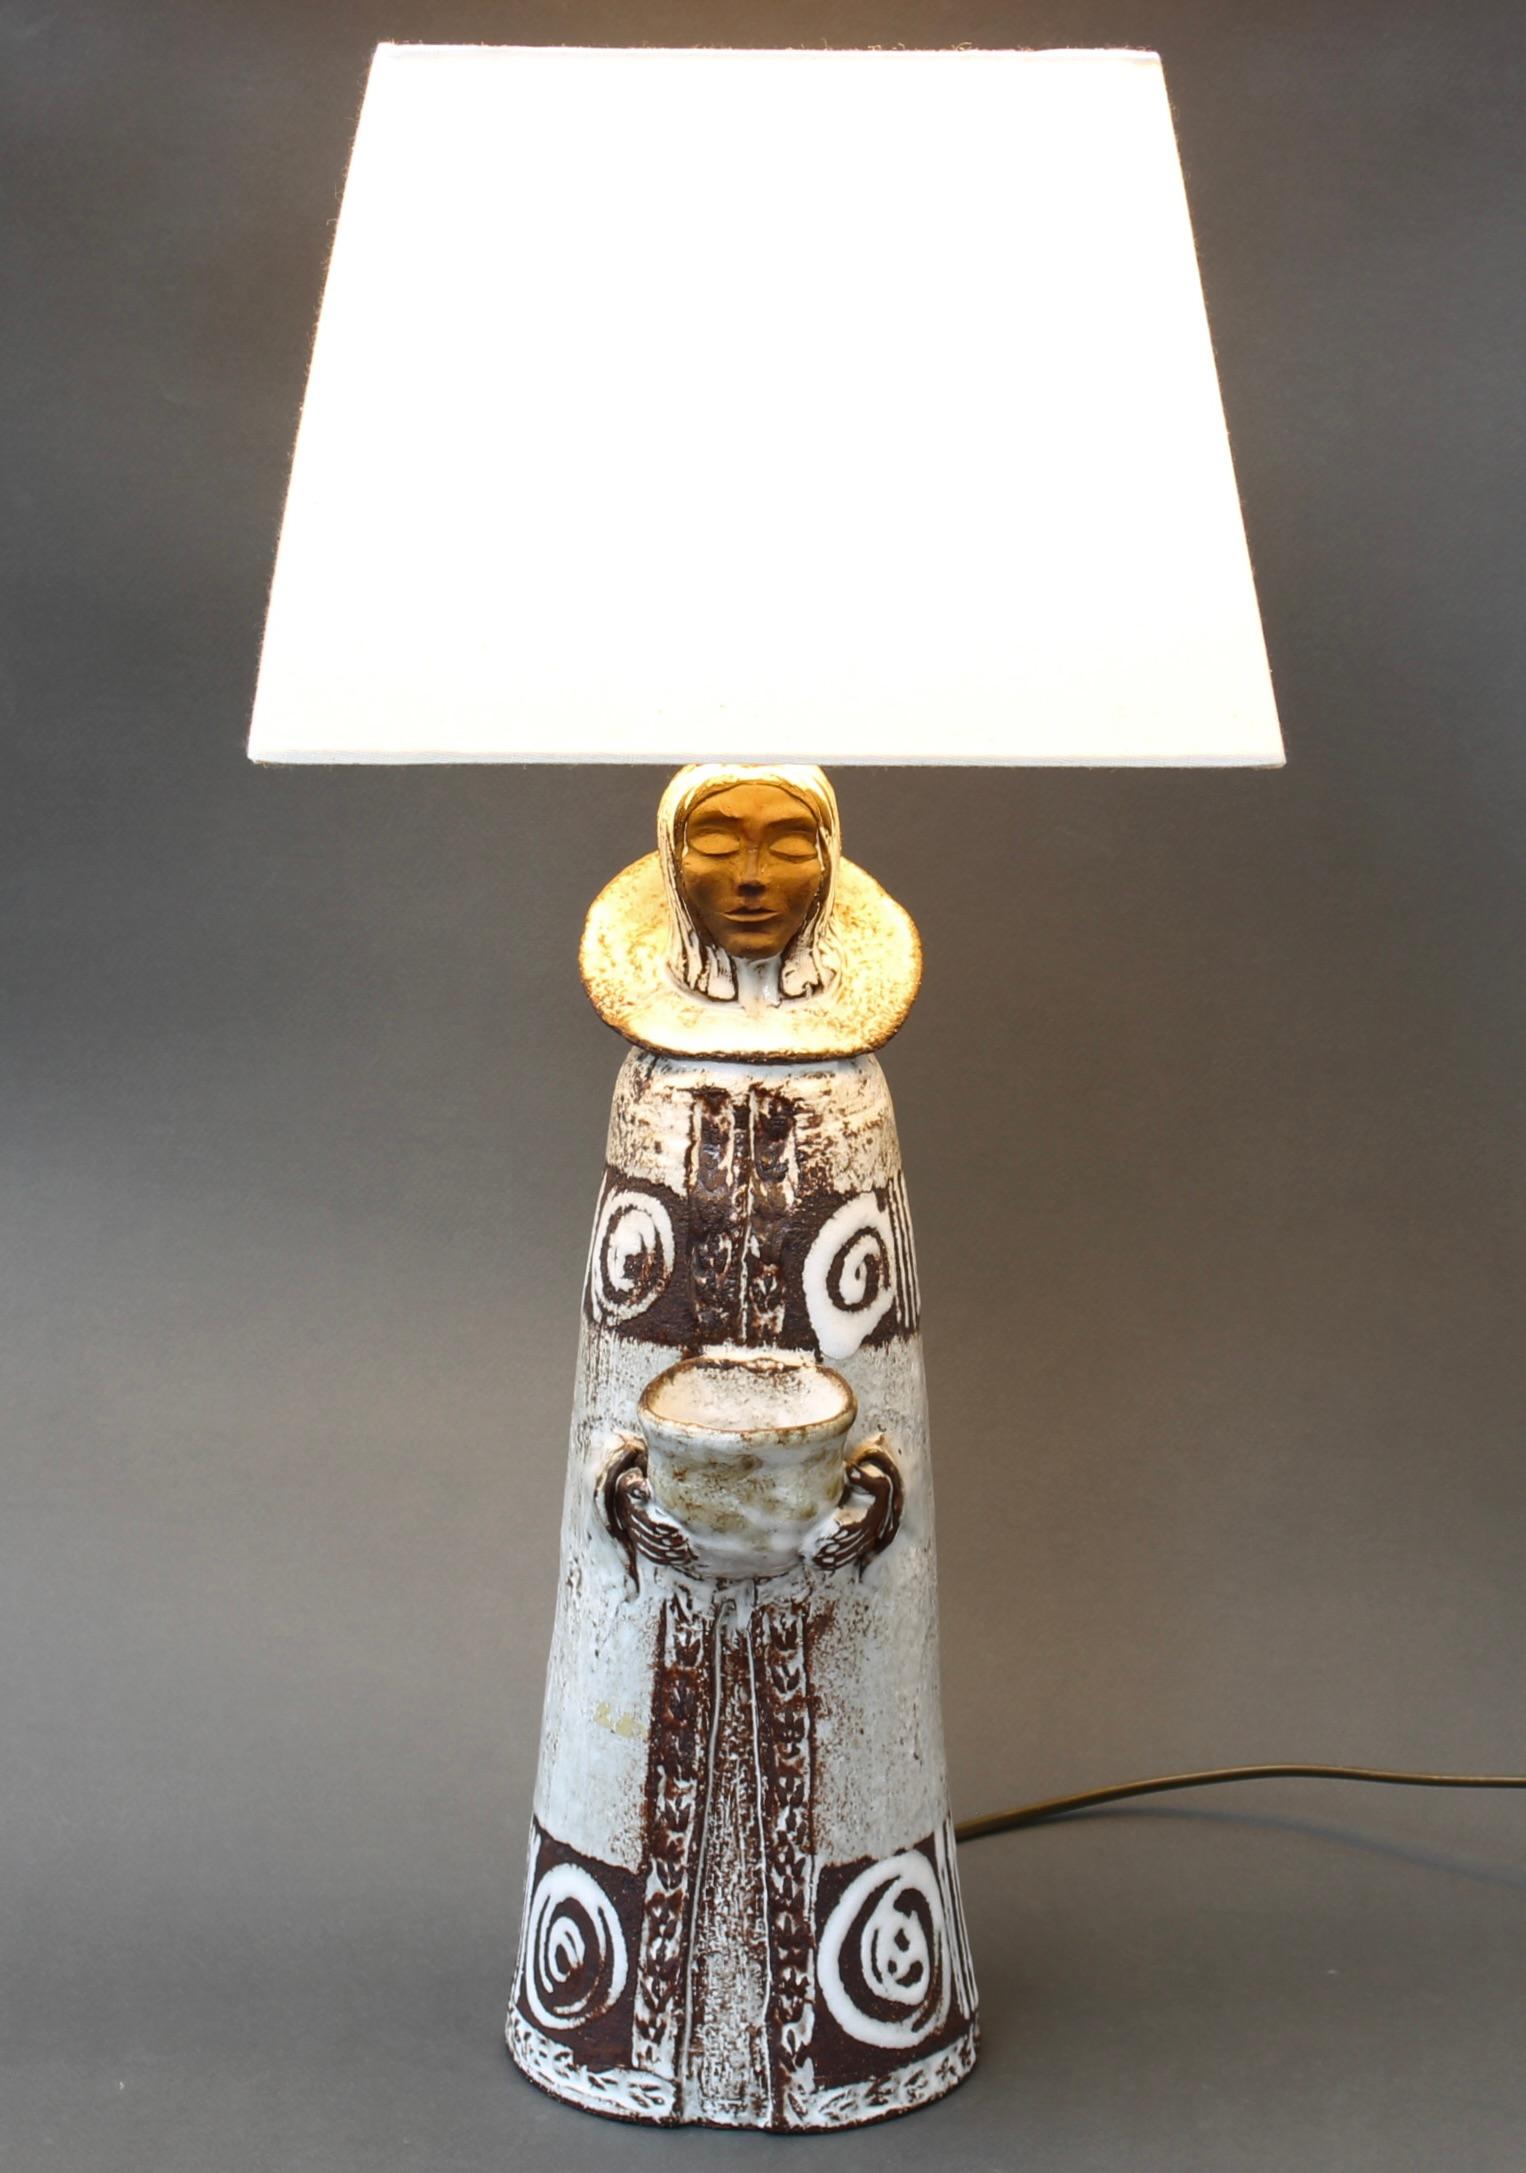 Lampe de table en céramique vintage française par Albert Thiry (circa 1970). Le céramiste Thiry a créé ce personnage - un clerc debout - qui porte un collier à l'ancienne et dont les mains sortent de la robe pour tenir une sorte de récipient